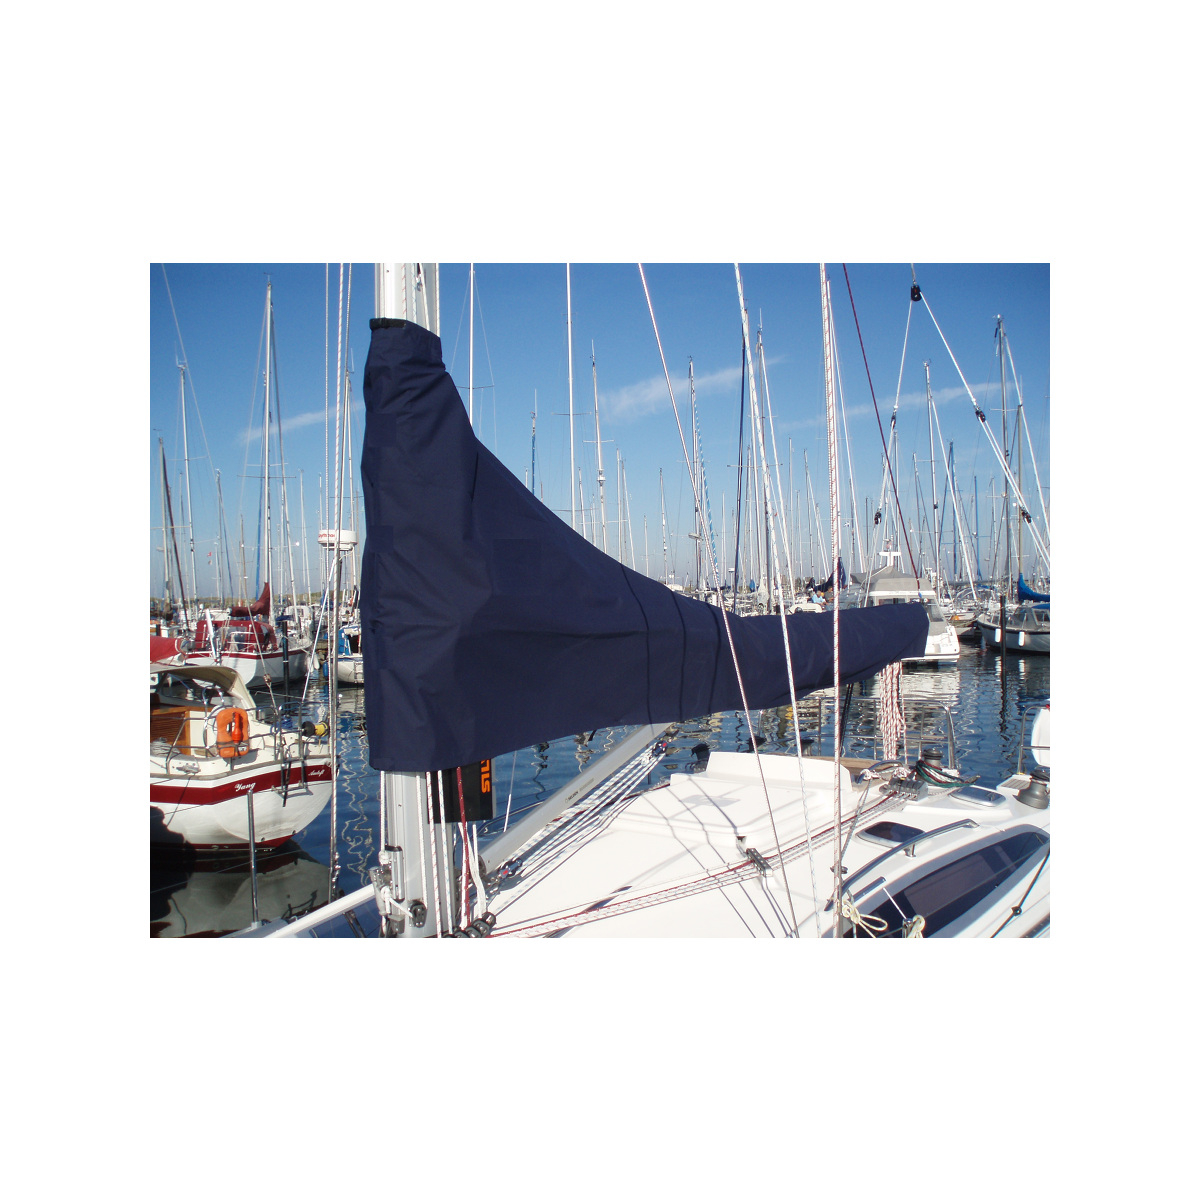 12zeemijlen zeilhuik donkerblauw - lengte 4,45m